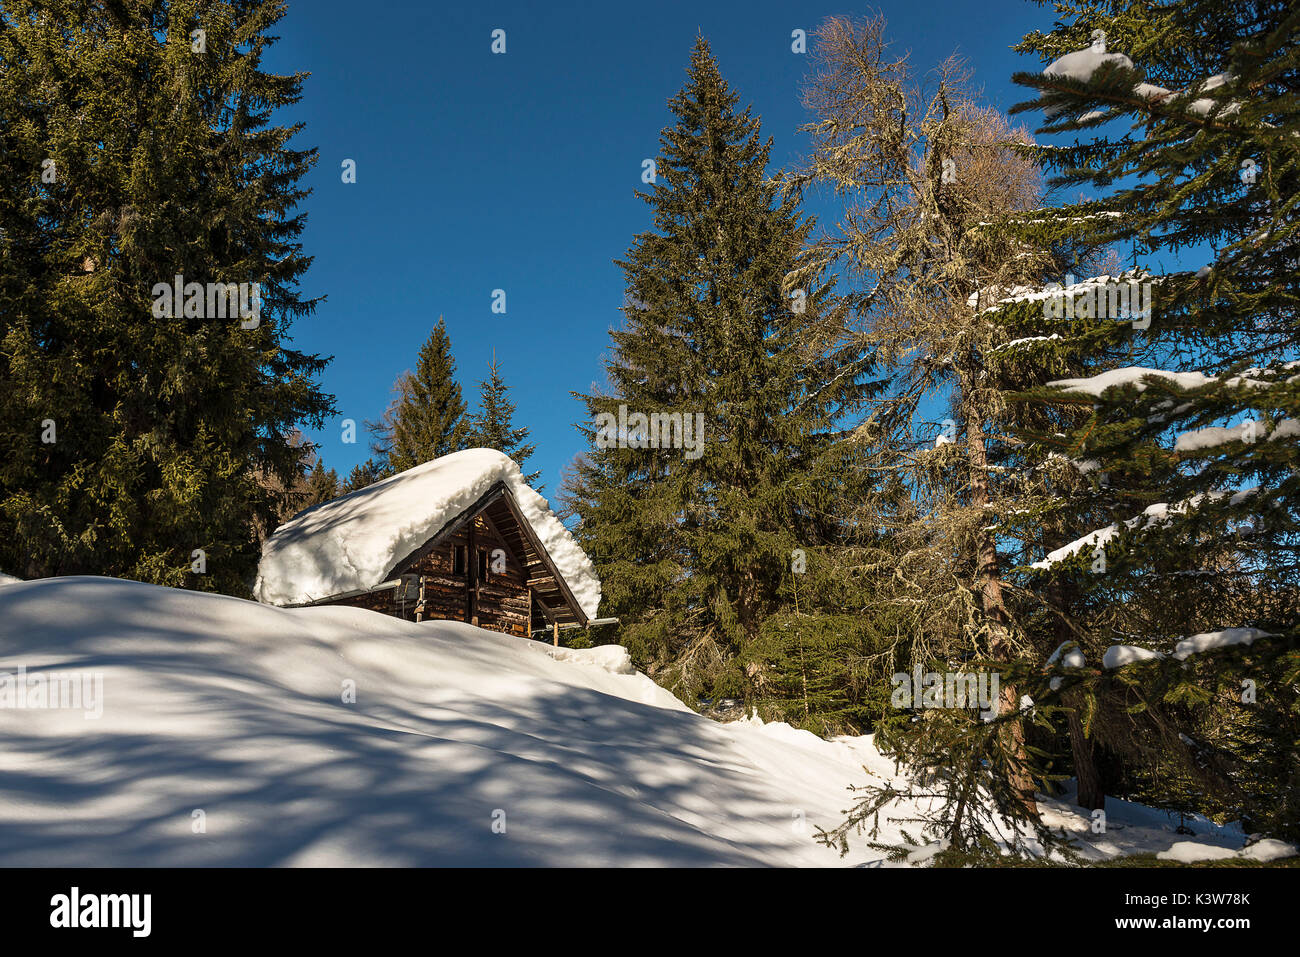 L'Italia, Trentino Alto Adige, Val di Non, neve sul tetto di una capanna in un inverno segnato dalla forte nevicata. Foto Stock